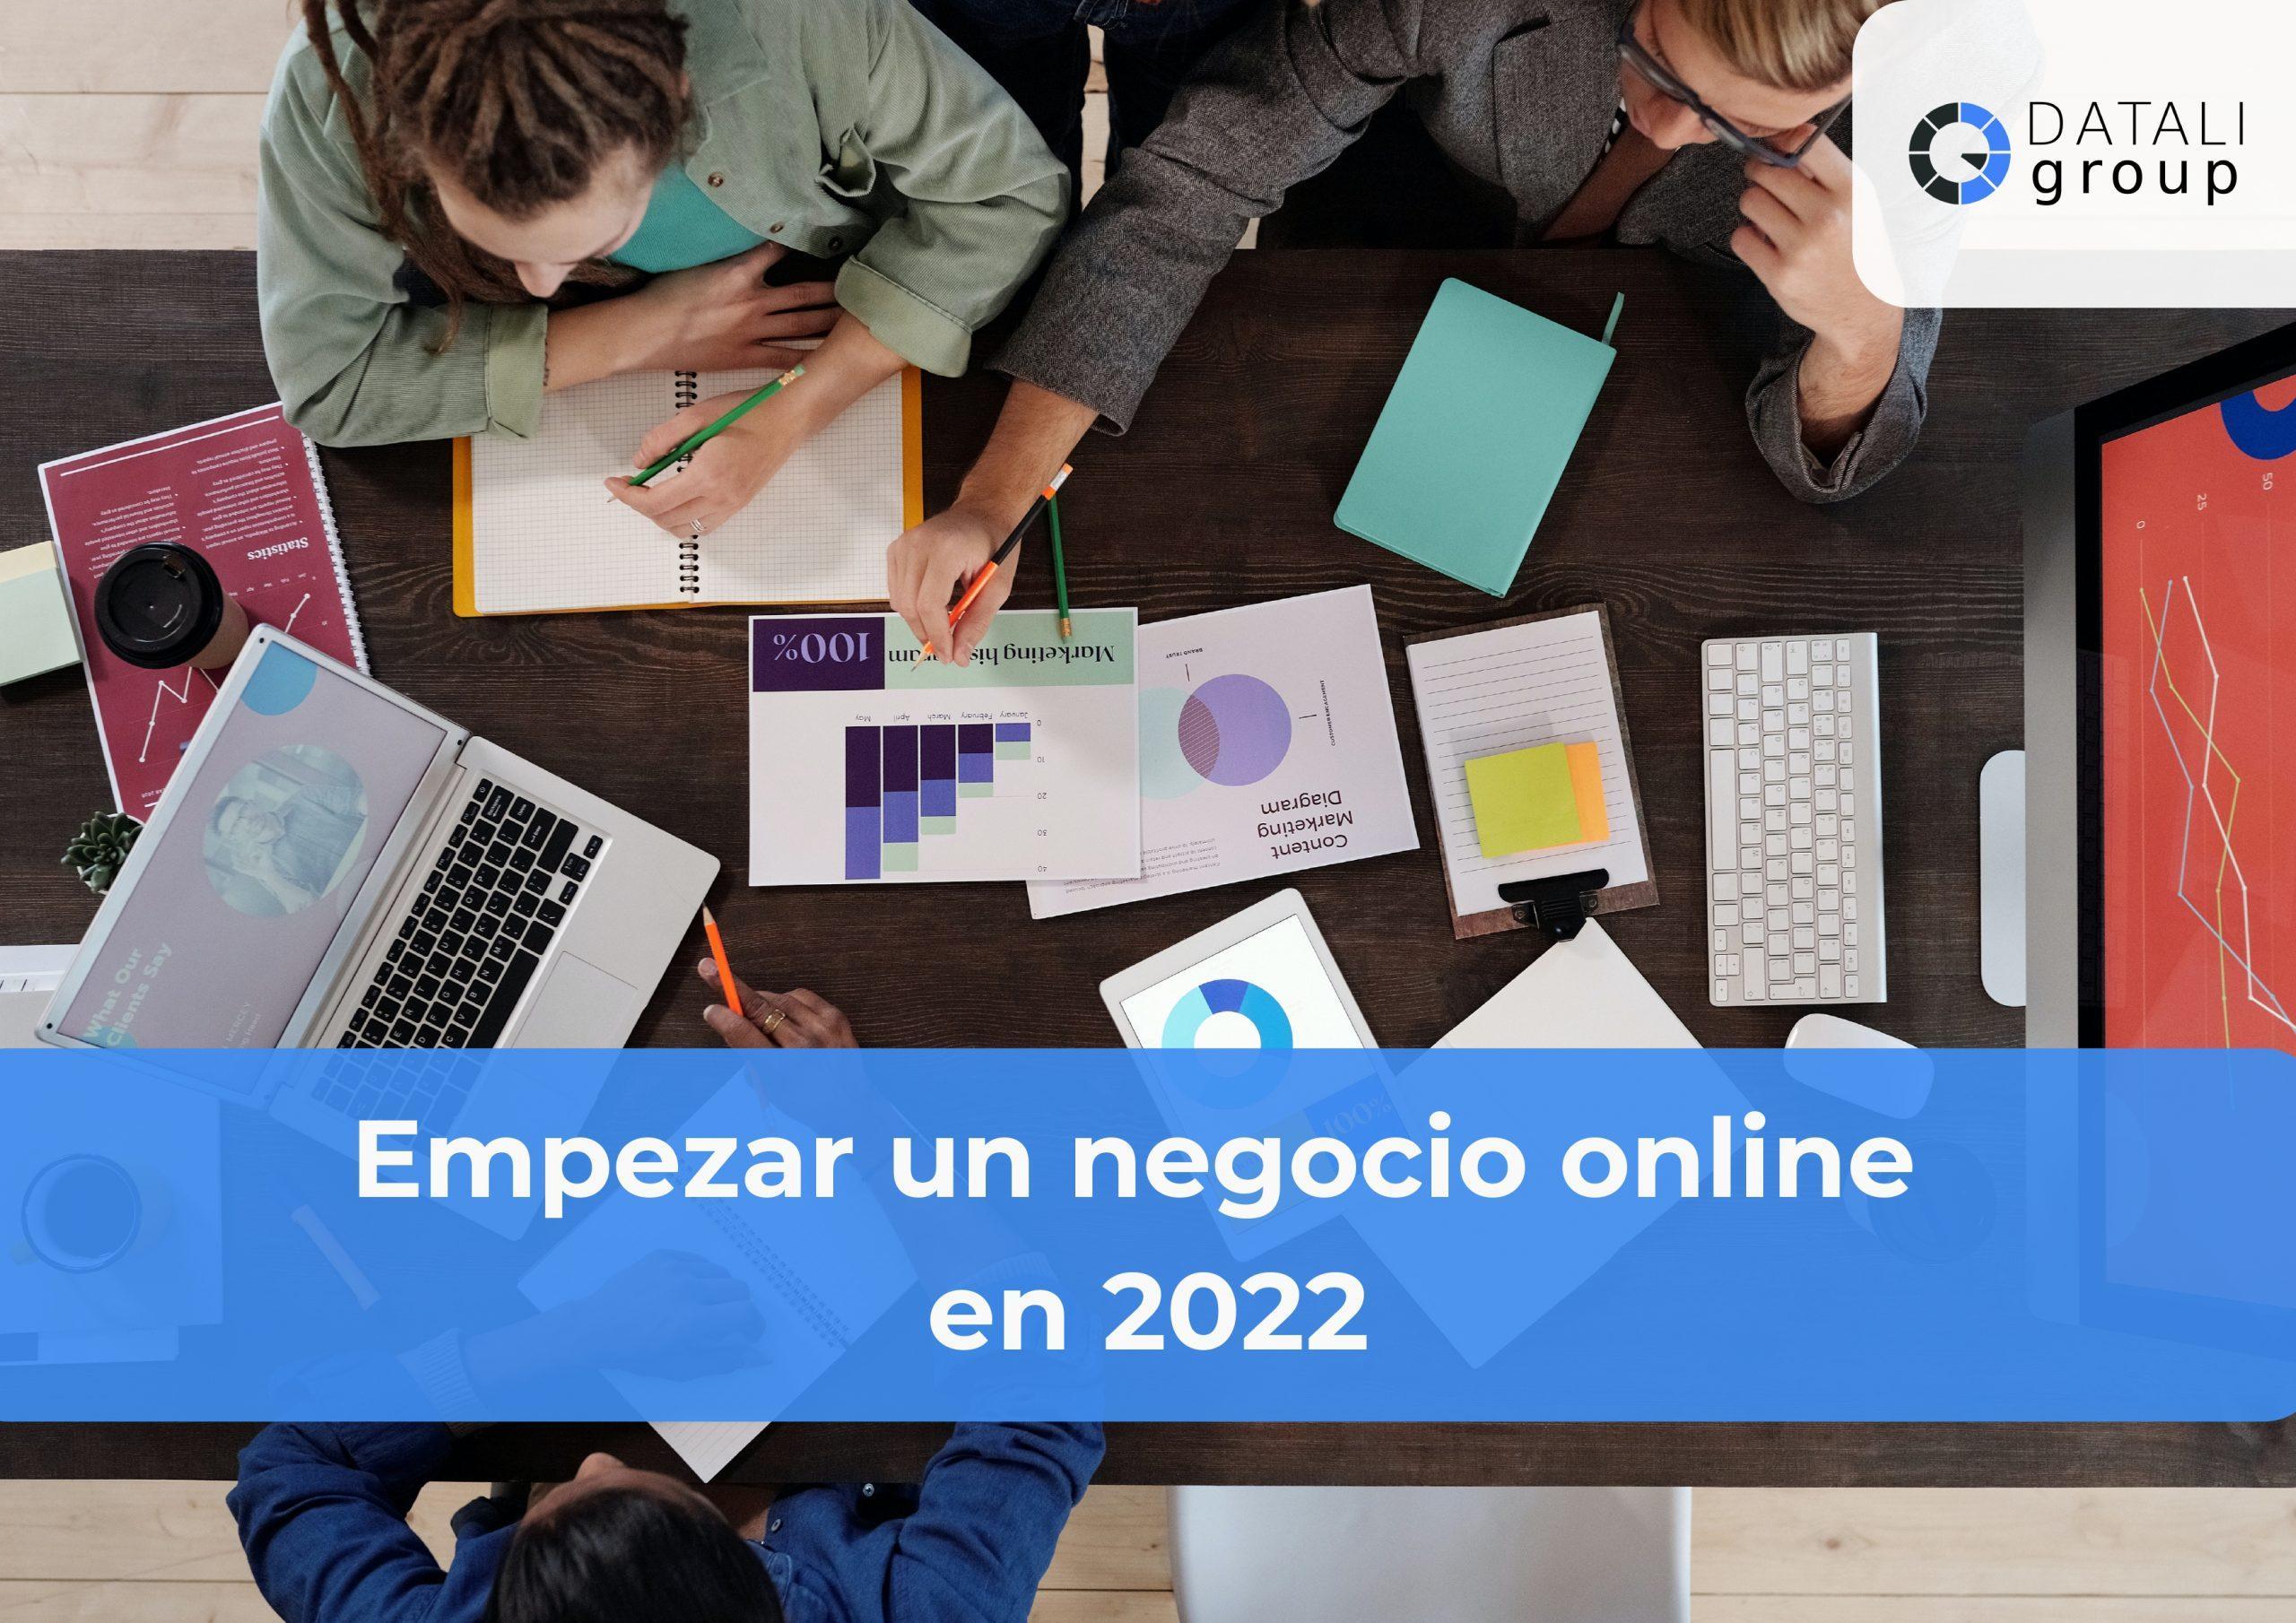 Datali Group - Empezar un negocio online en 2022